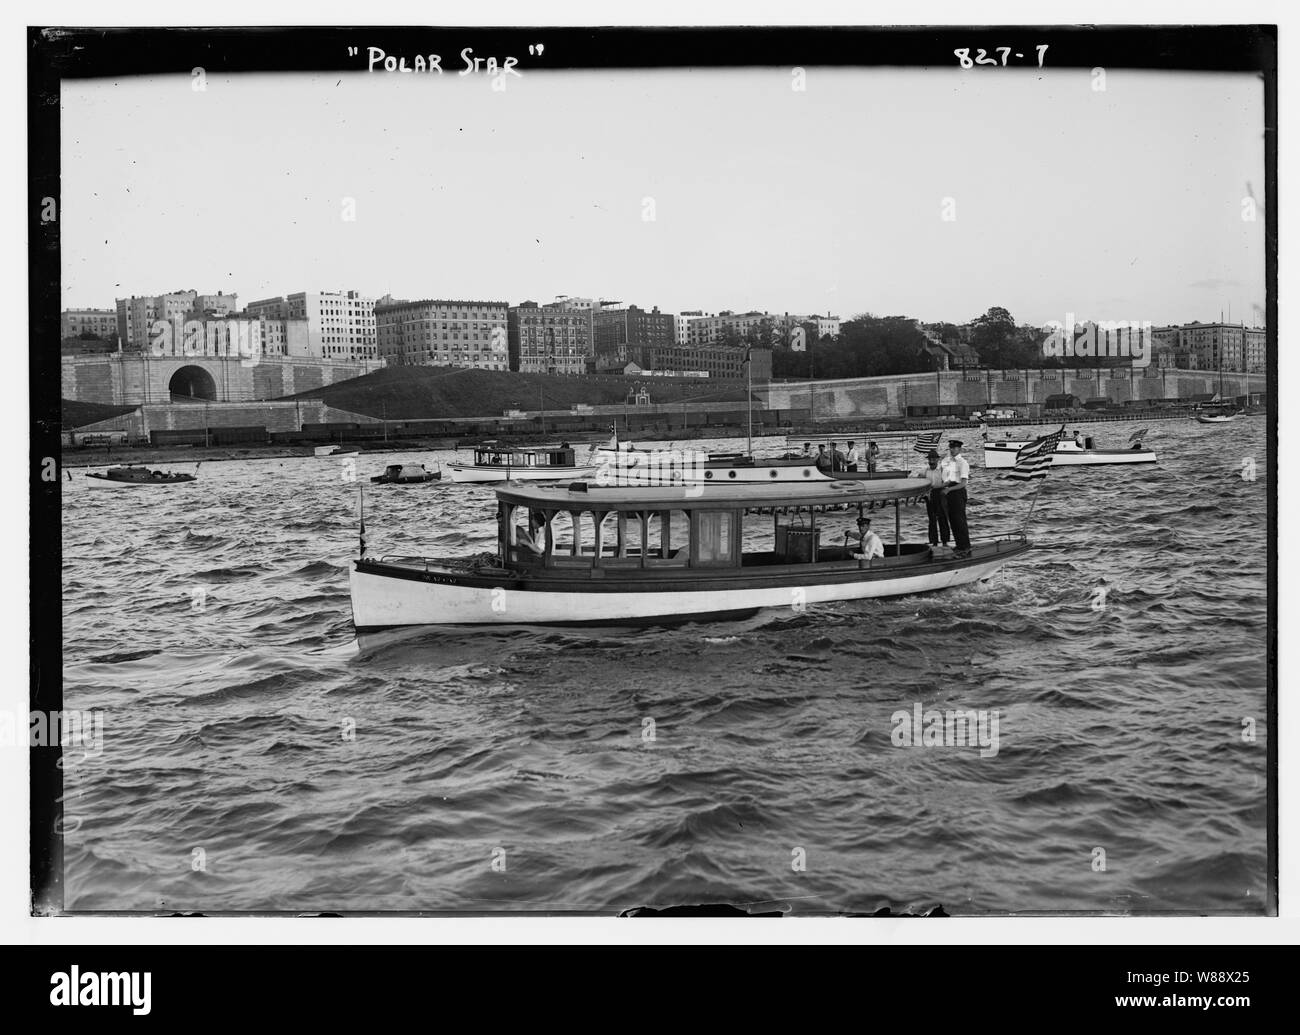 Polar Star, bateau sur l'Hudson, New York Banque D'Images